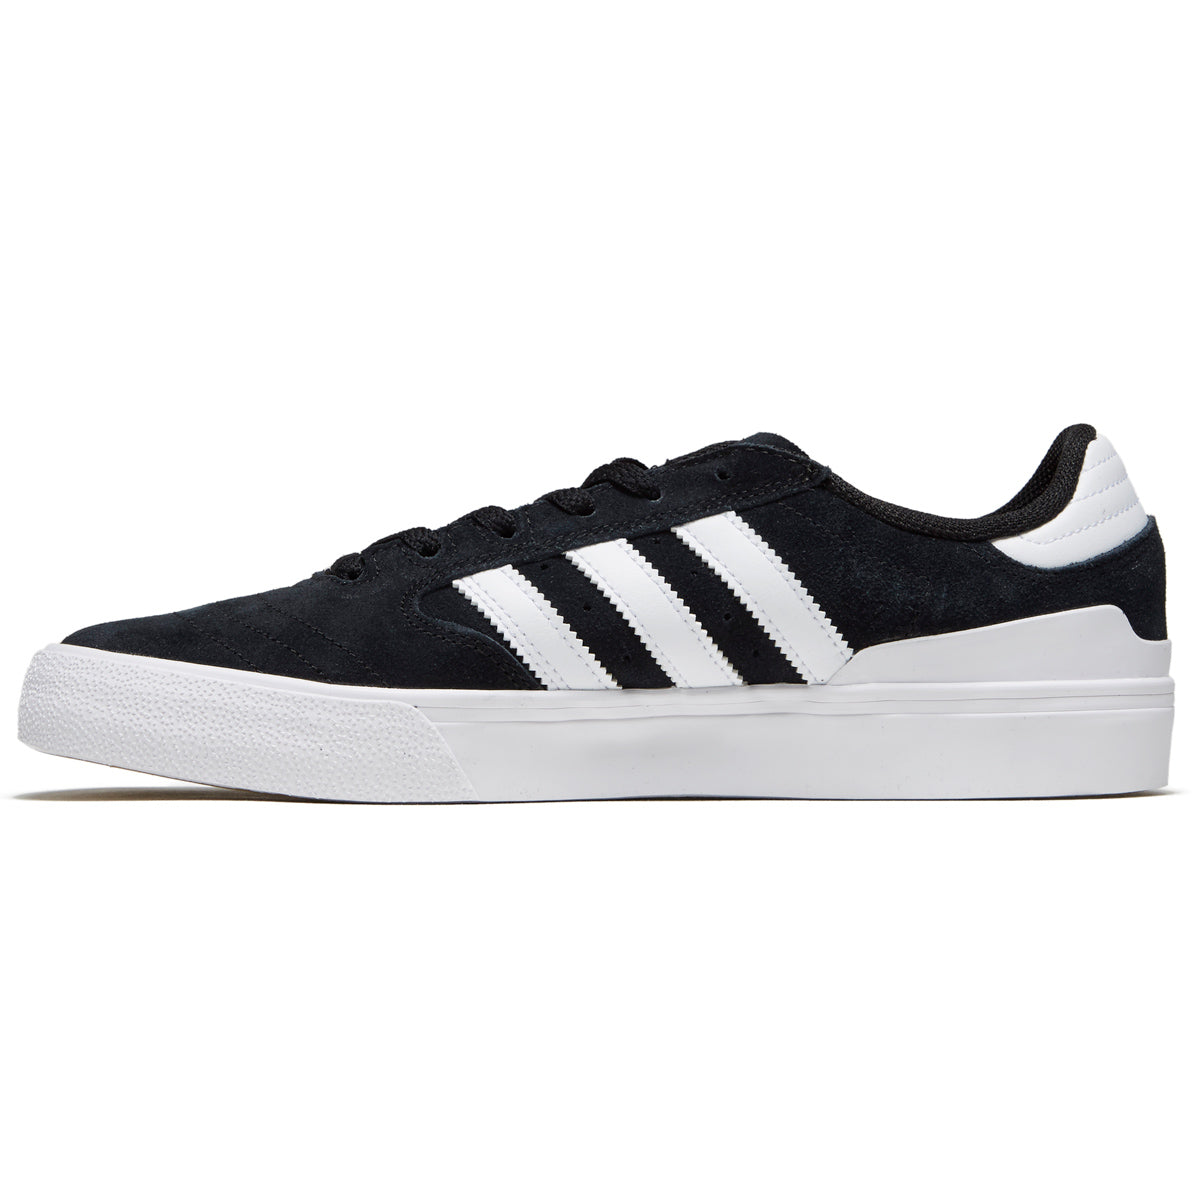 Adidas Busenitz Vulc II Shoes - Black/White/Gum image 2